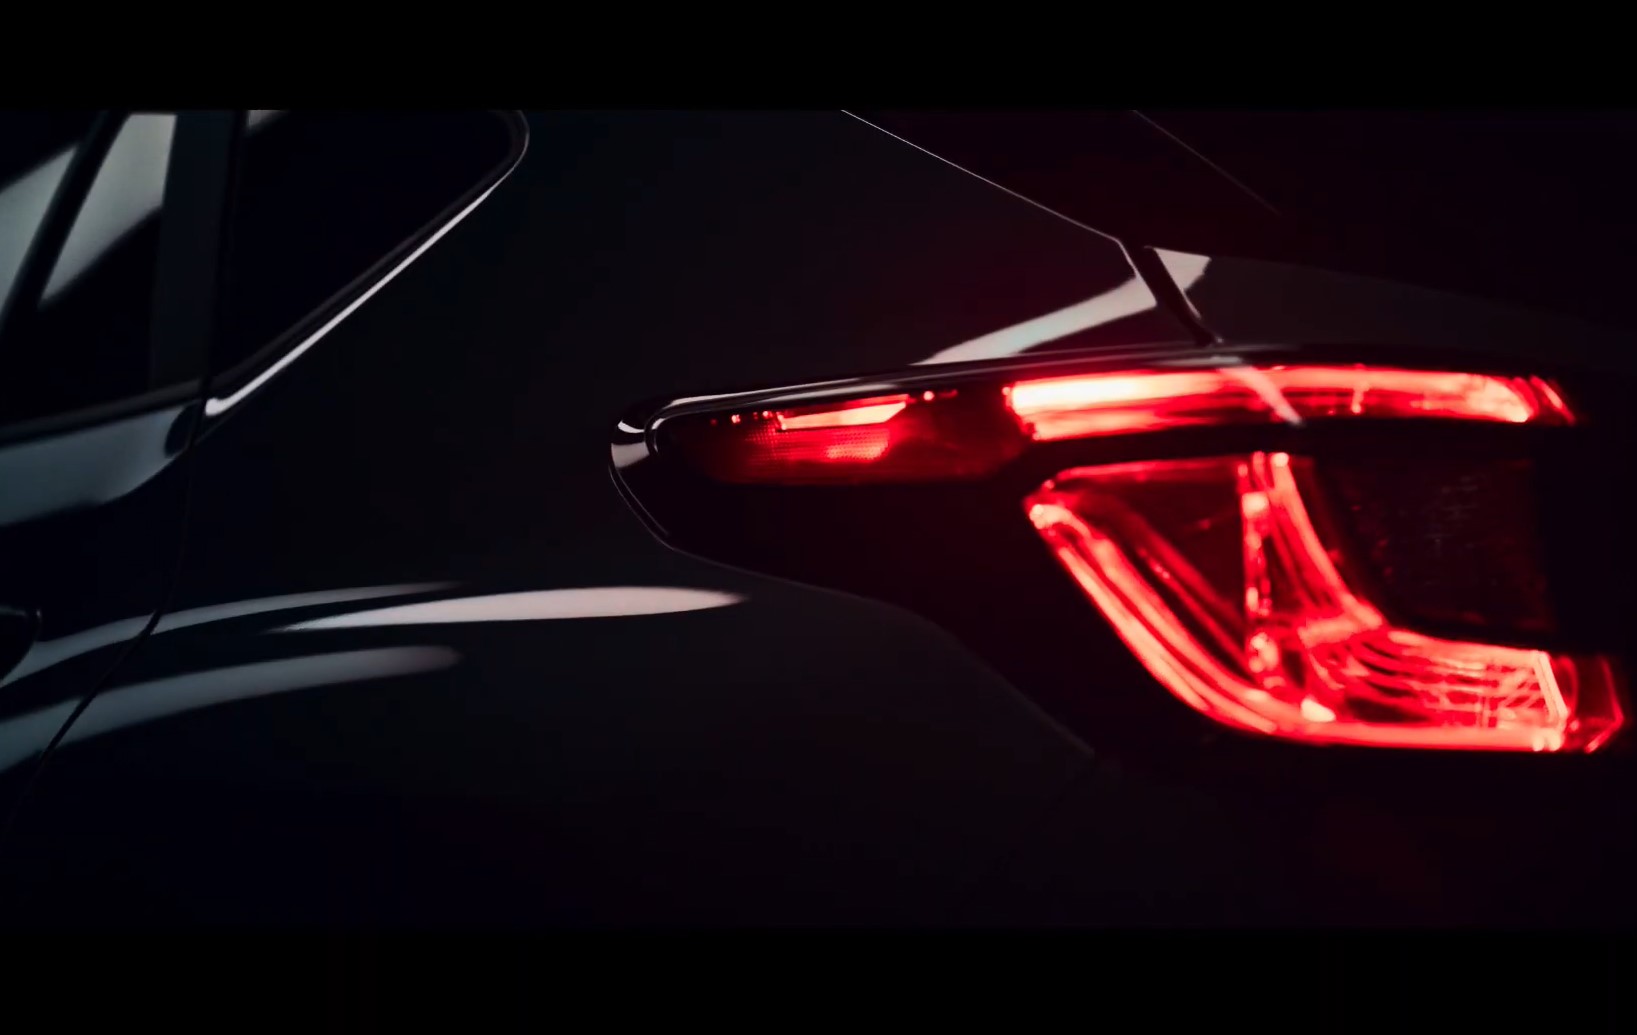 Кроссовер Subaru XV нового поколения показали на видео перед премьерой в сентябре 2022 года